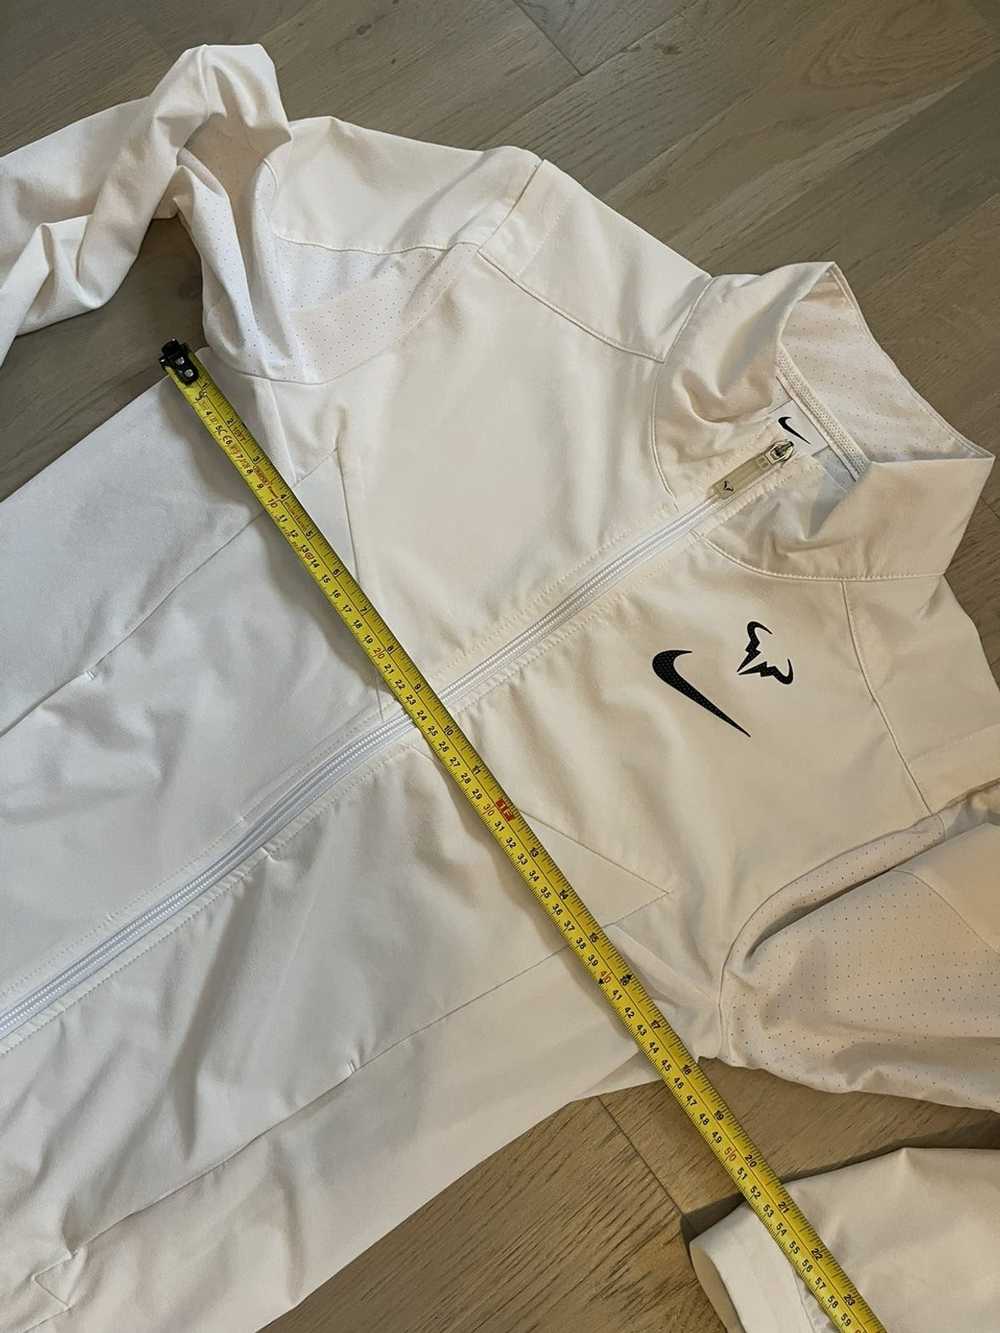 Nike NIKE x RAFA NADAL track jacket sizes in phot… - image 3